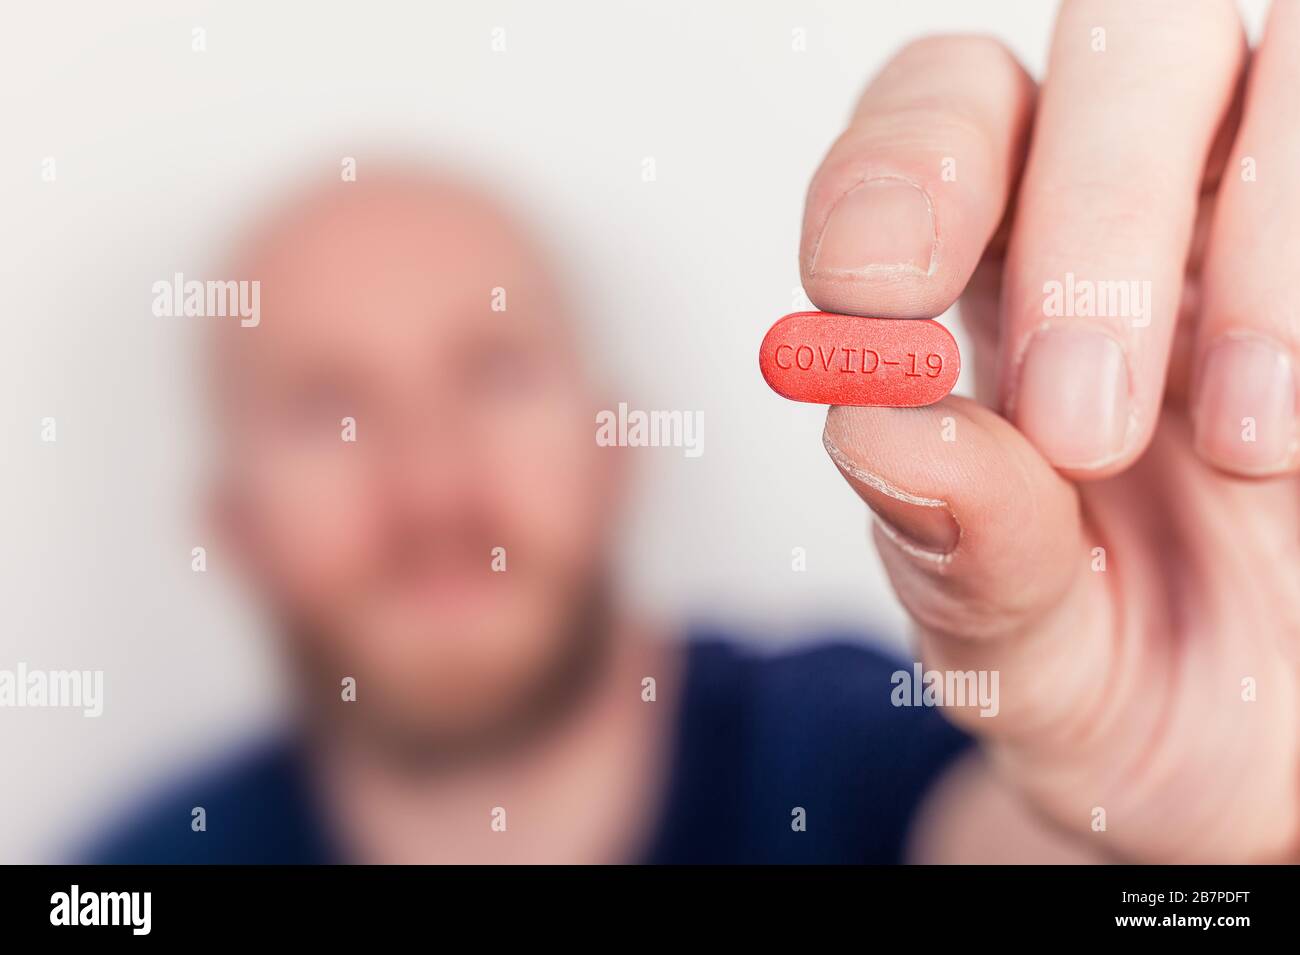 Abbildung: Heilmittel gegen Coronavirus Covid-19, Mann mit einer Tablette mit Covid-19-Etikett. Stockfoto